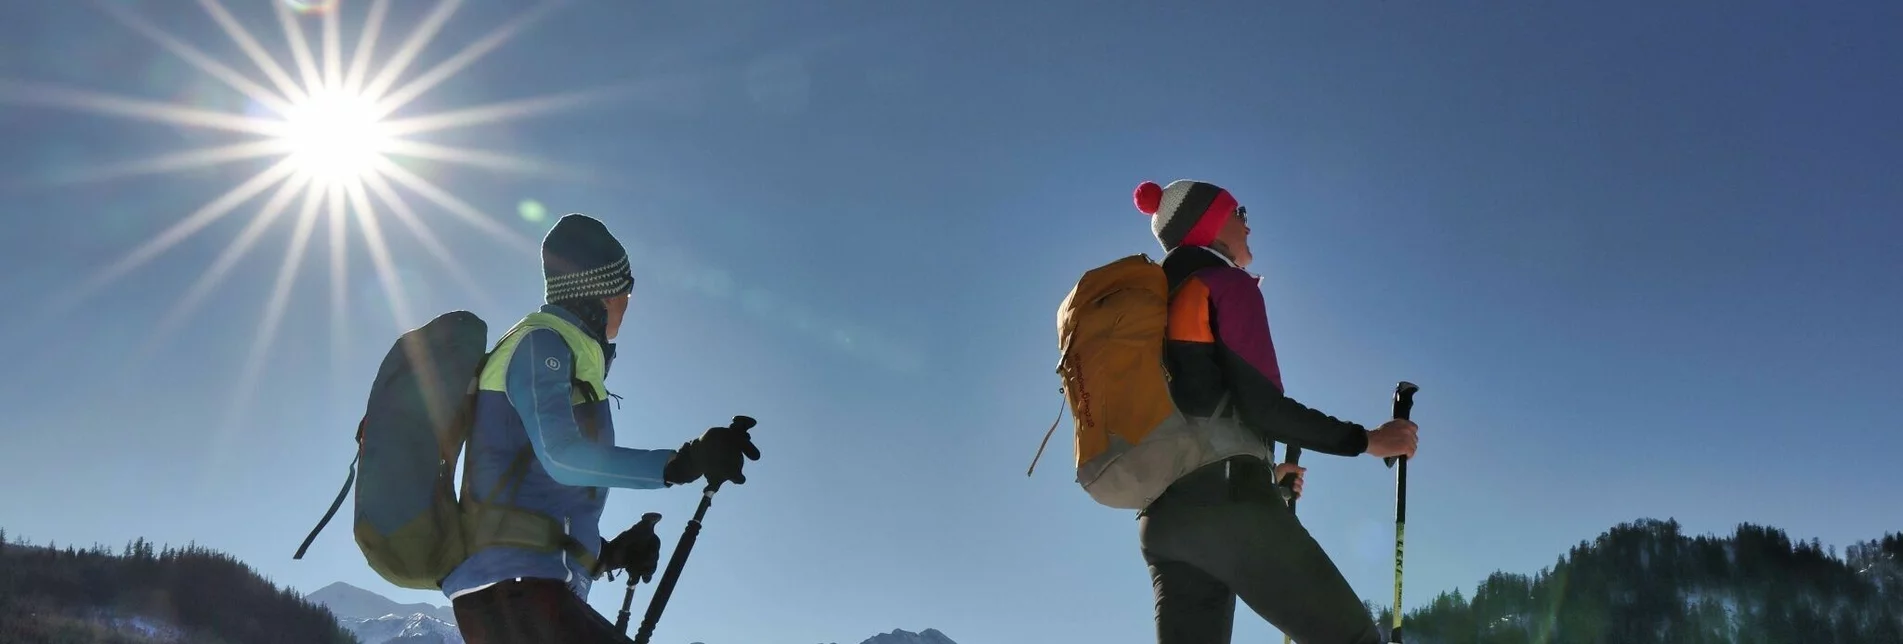 Winterwandern Von Kalwang nach Wald am Schoberpaß mit dem Liesingtal im Blick - Touren-Impression #1 | © Weges OG